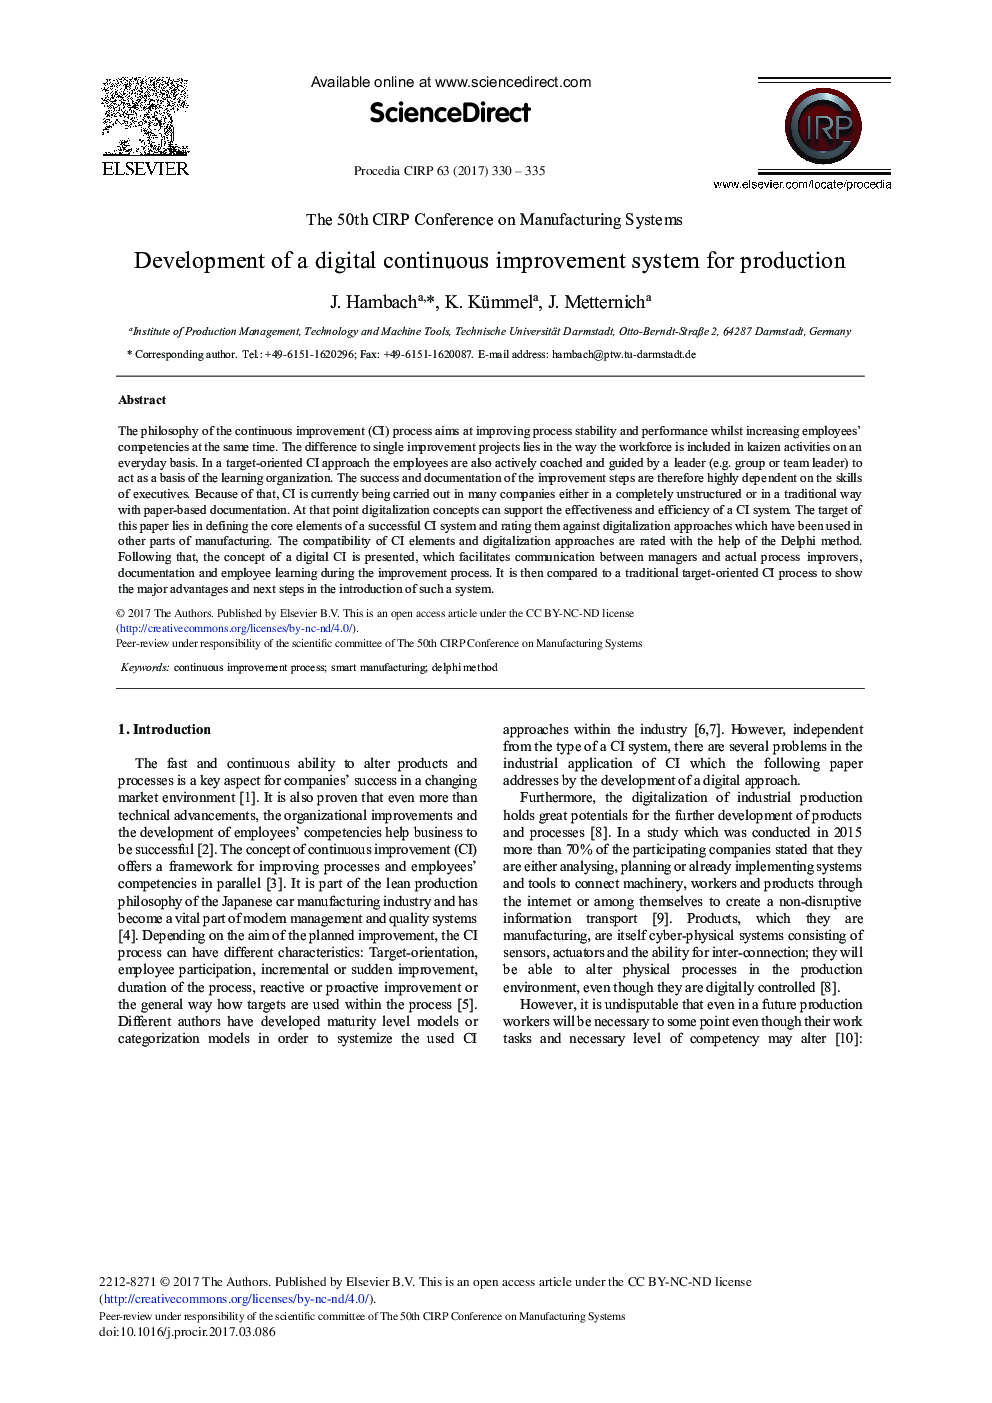 توسعه یک سیستم بهبود مستمر دیجیتال برای تولید 